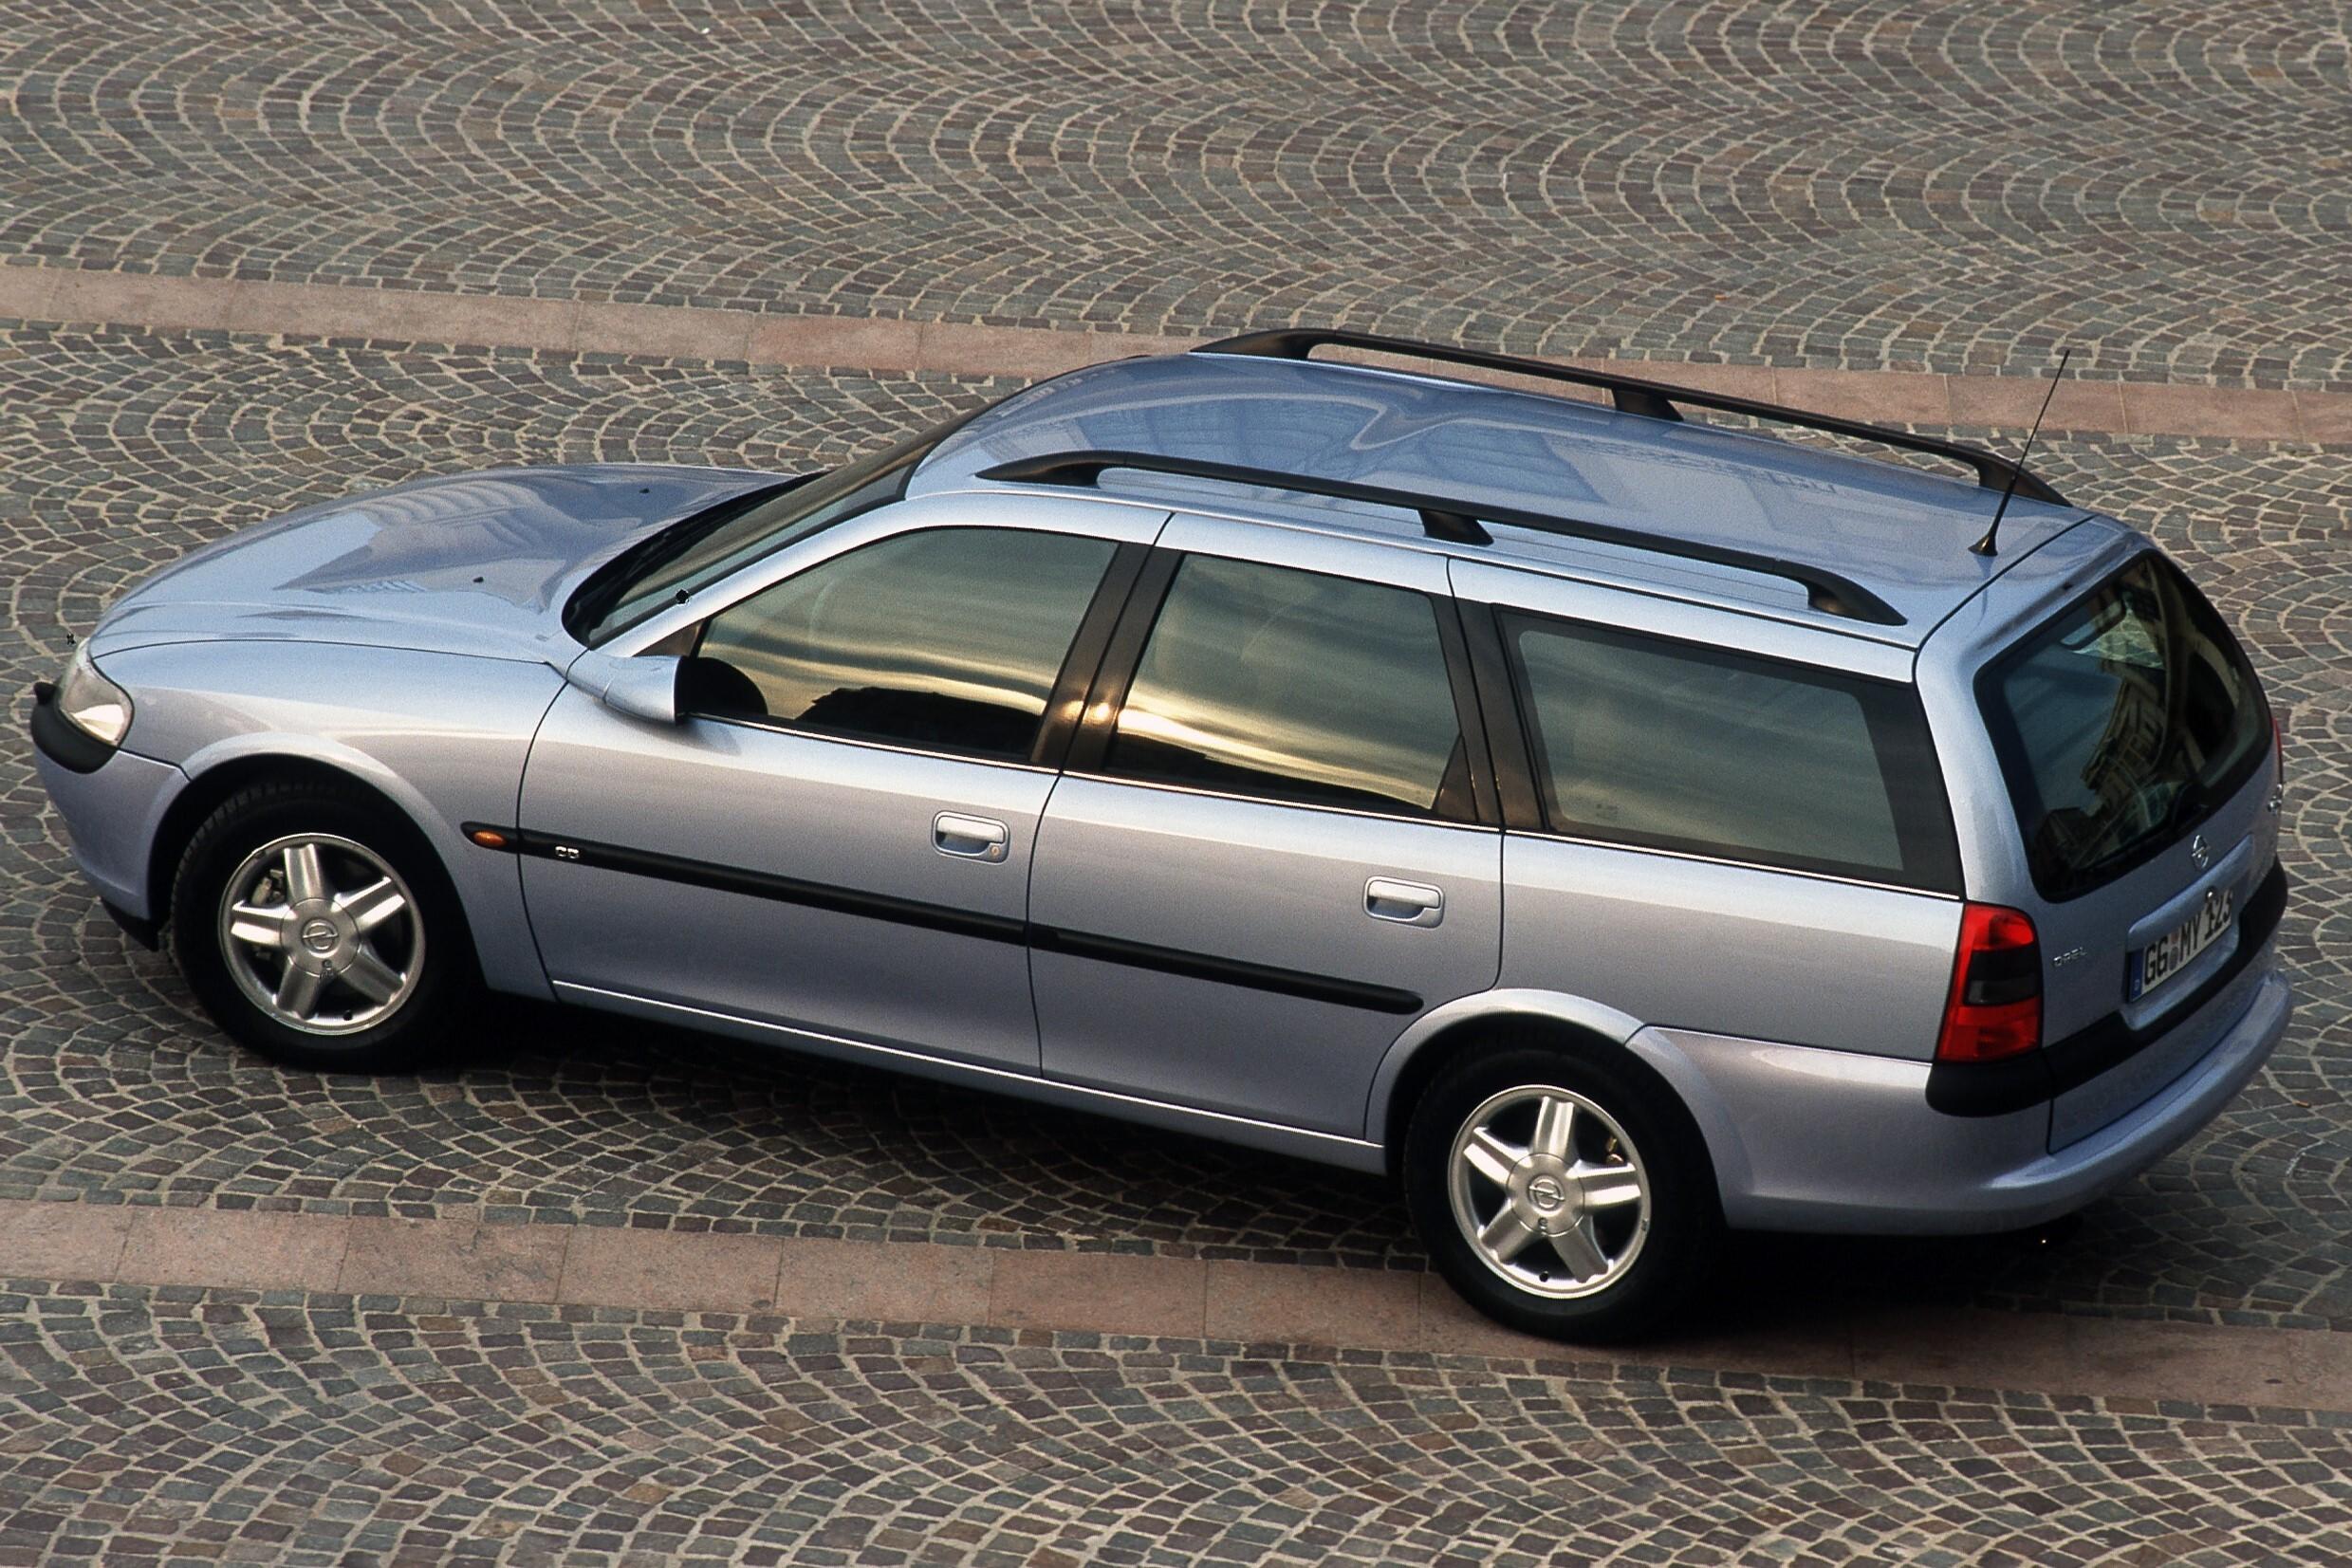 Универсал караван. Opel Vectra Caravan. Opel Vectra b 1998 универсал. Opel Vectra b универсал 1999. Опель Вектра b универсал 1998.